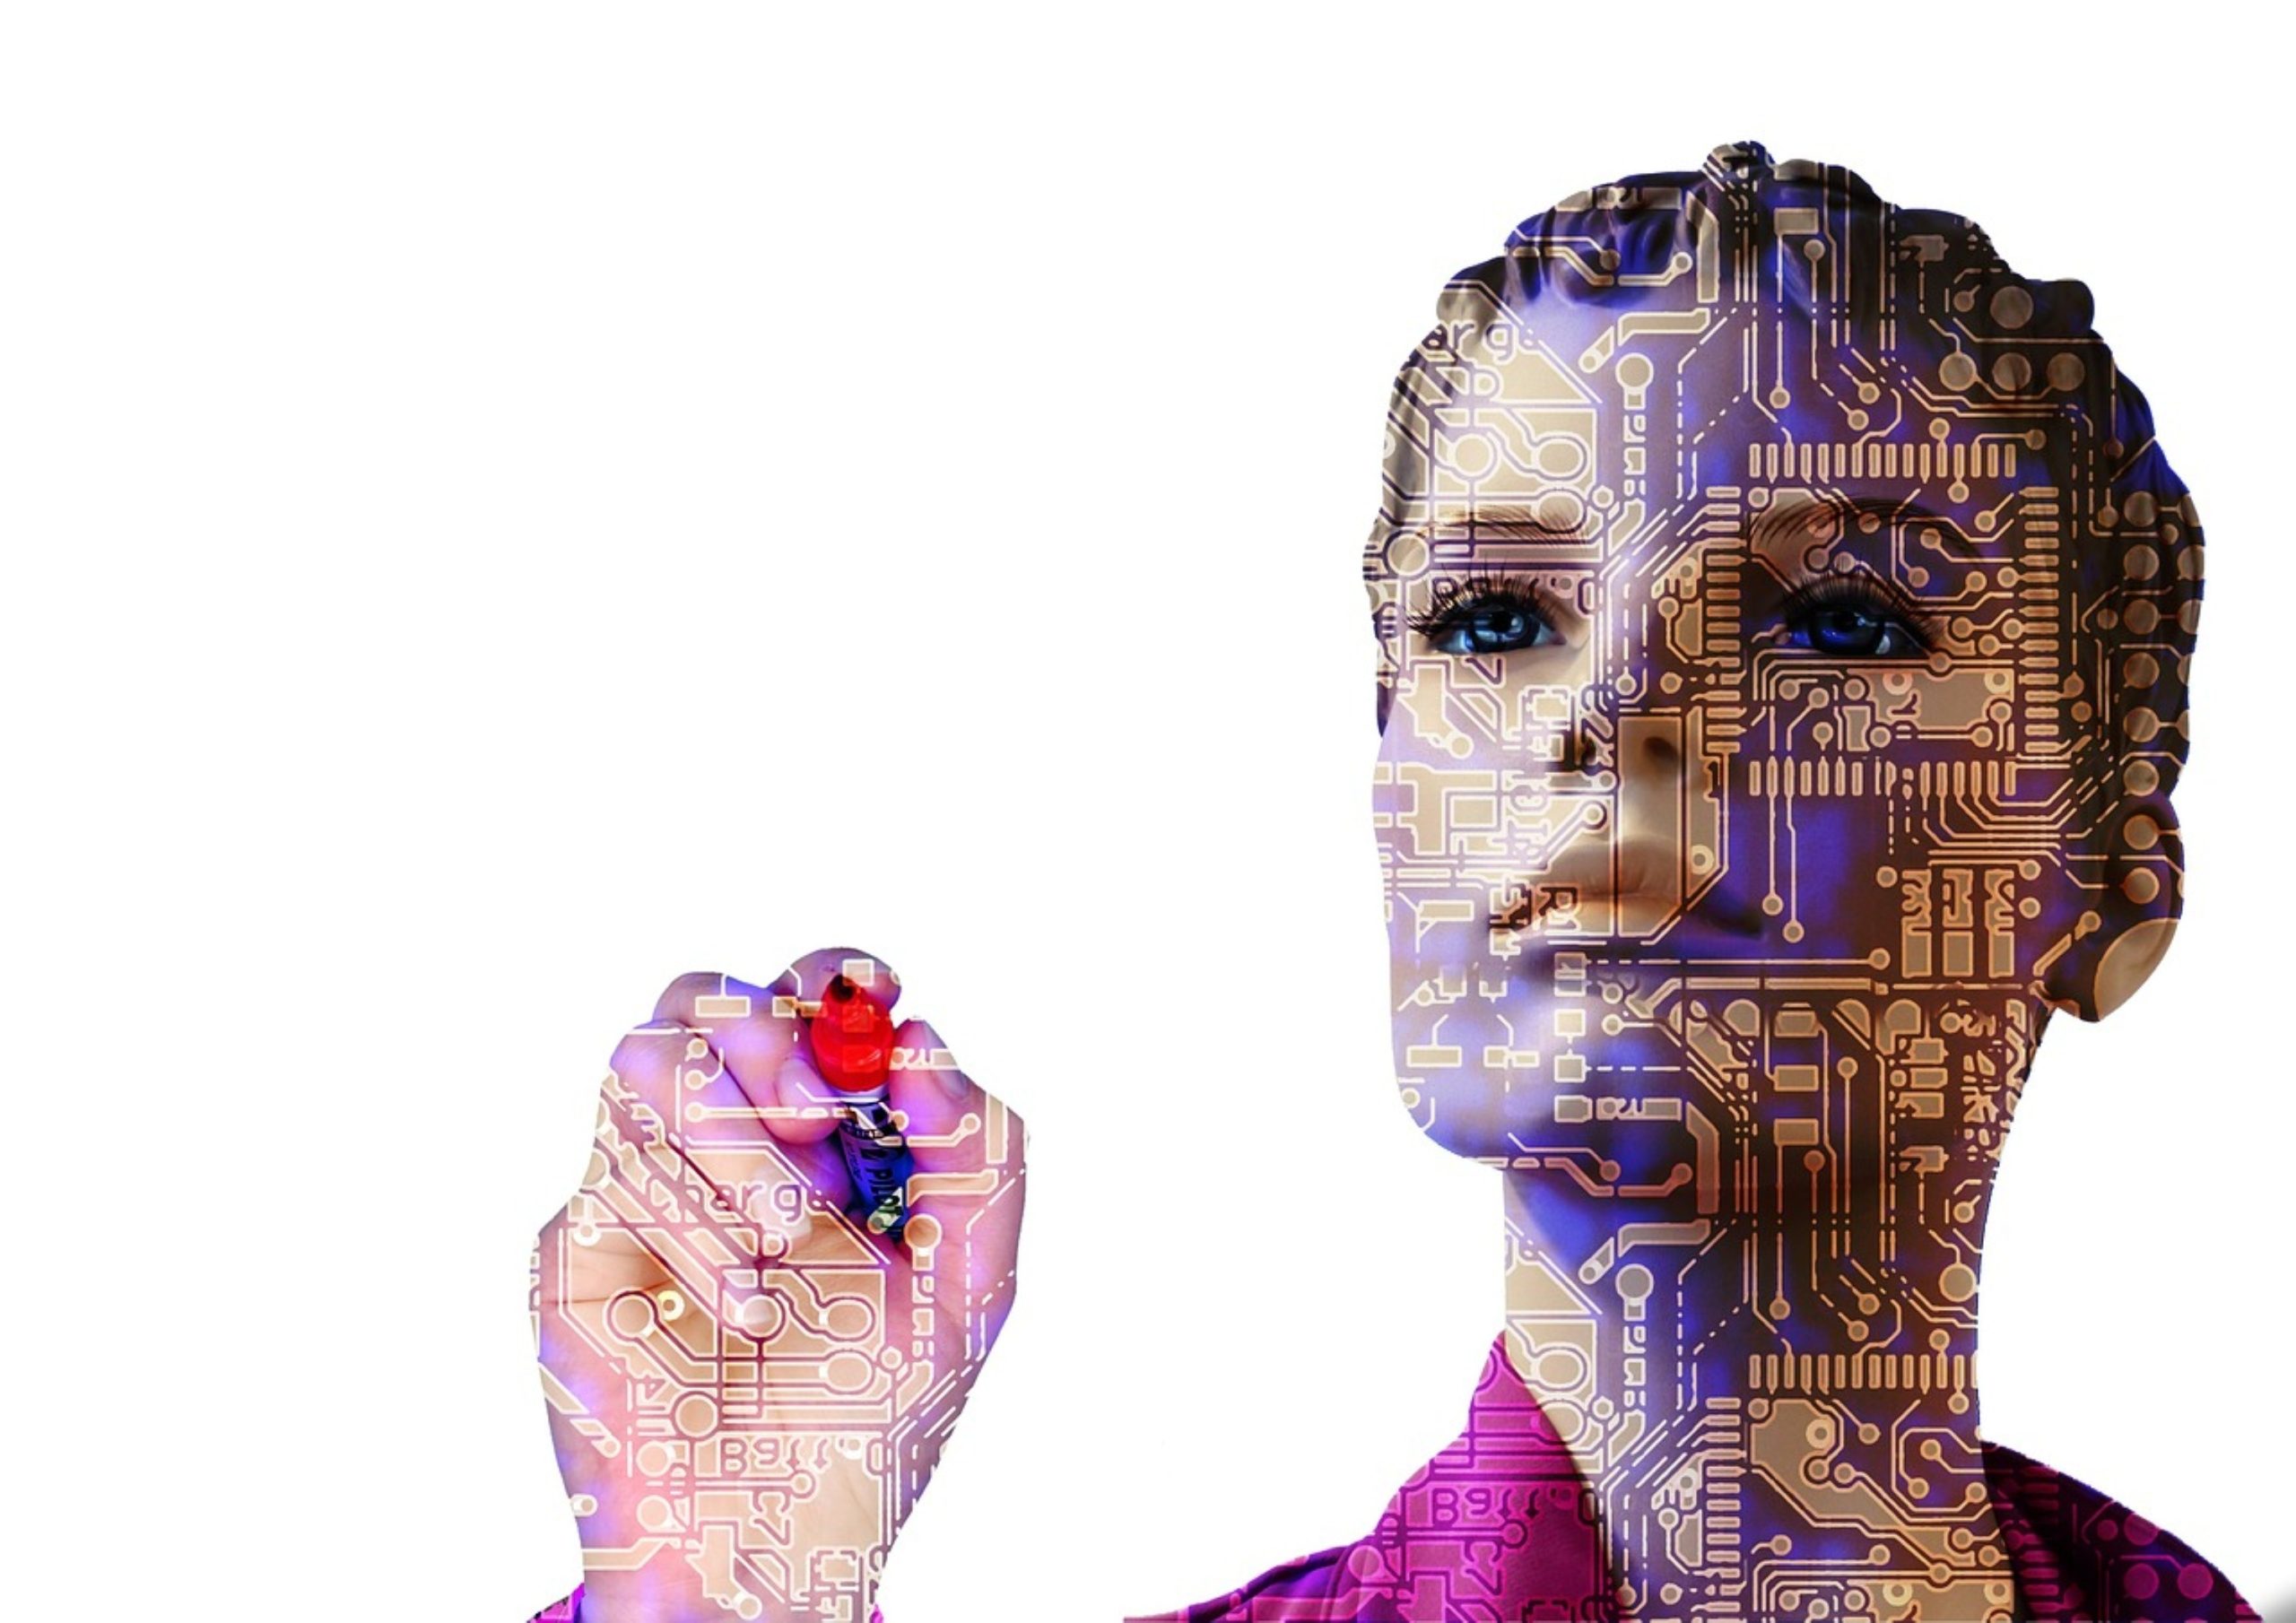 Artificial intelligence illustration